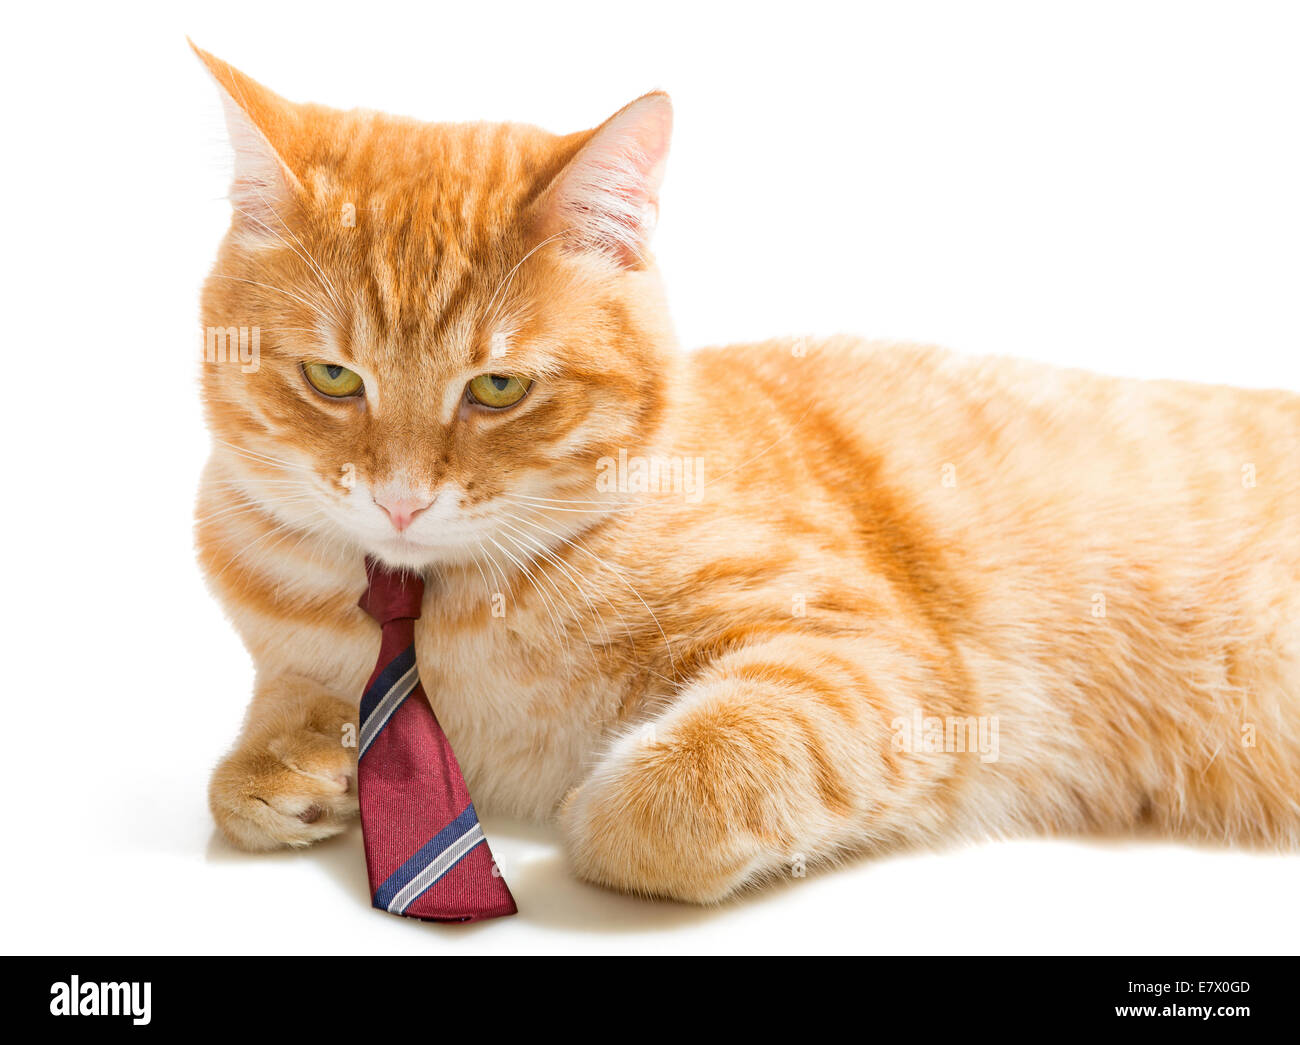 Molto grave gatto arancione con una cravatta rossa Foto stock - Alamy